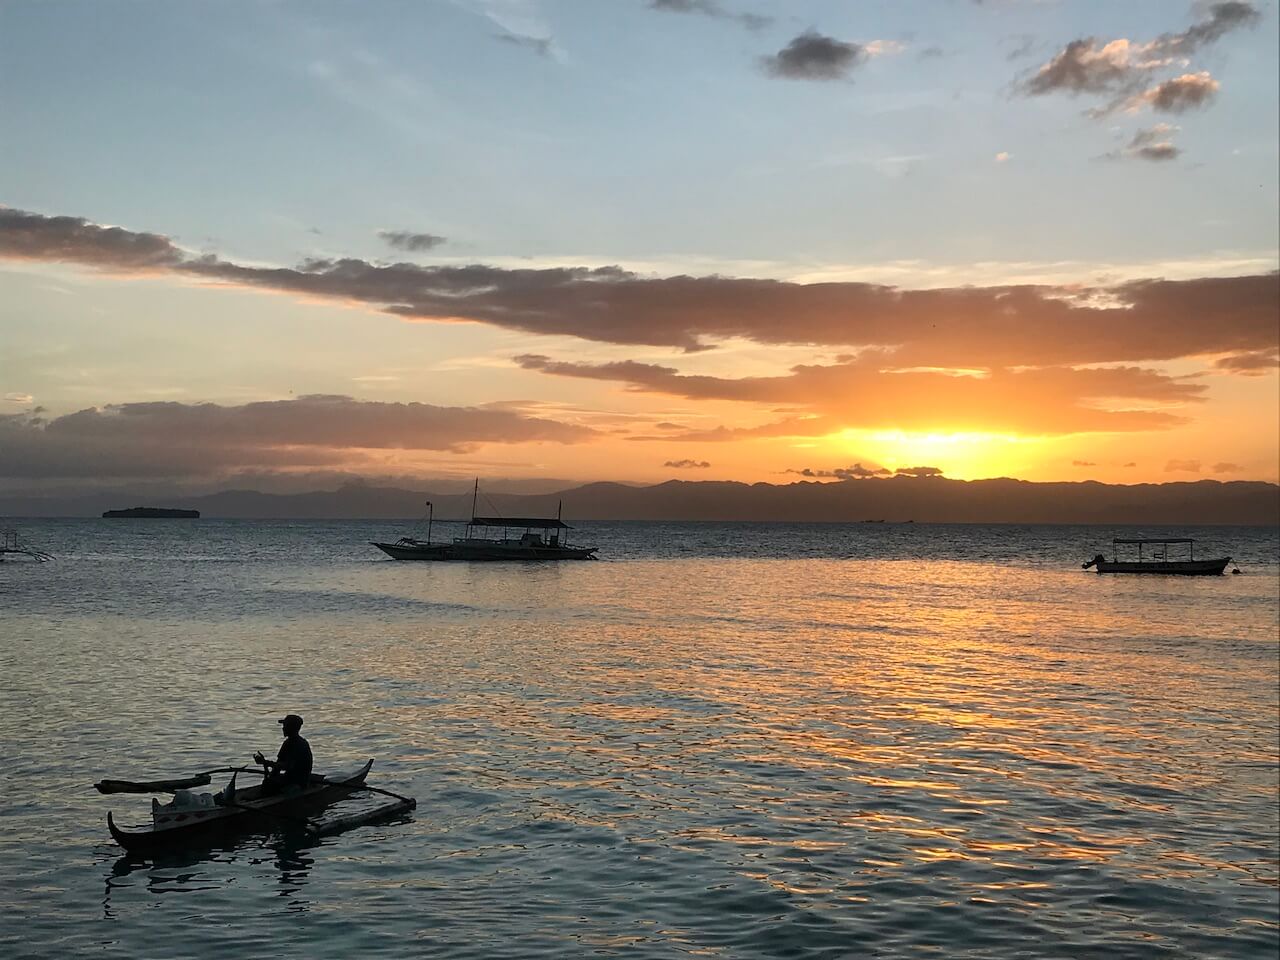 Sunset in Moalboal, Cebu Island